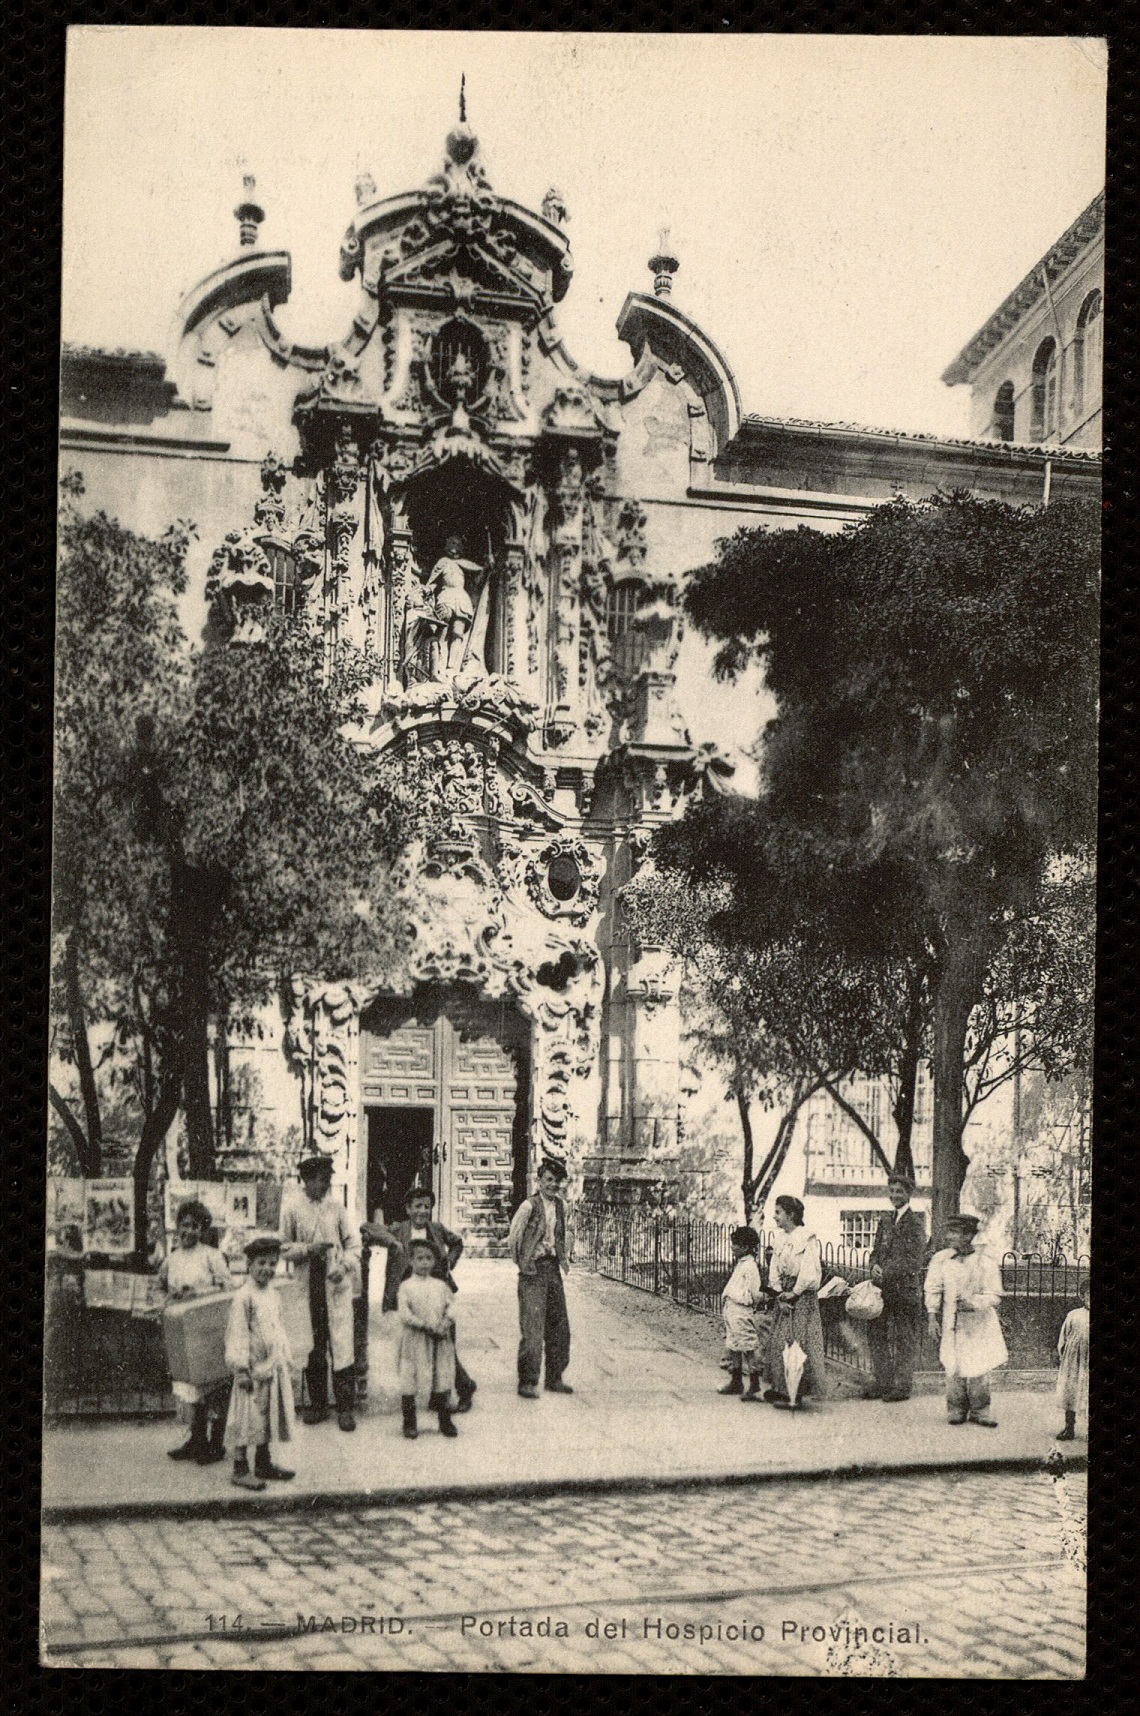  Hospicio Provincial, 1906-1914. Fotografía de J. Lacoste.